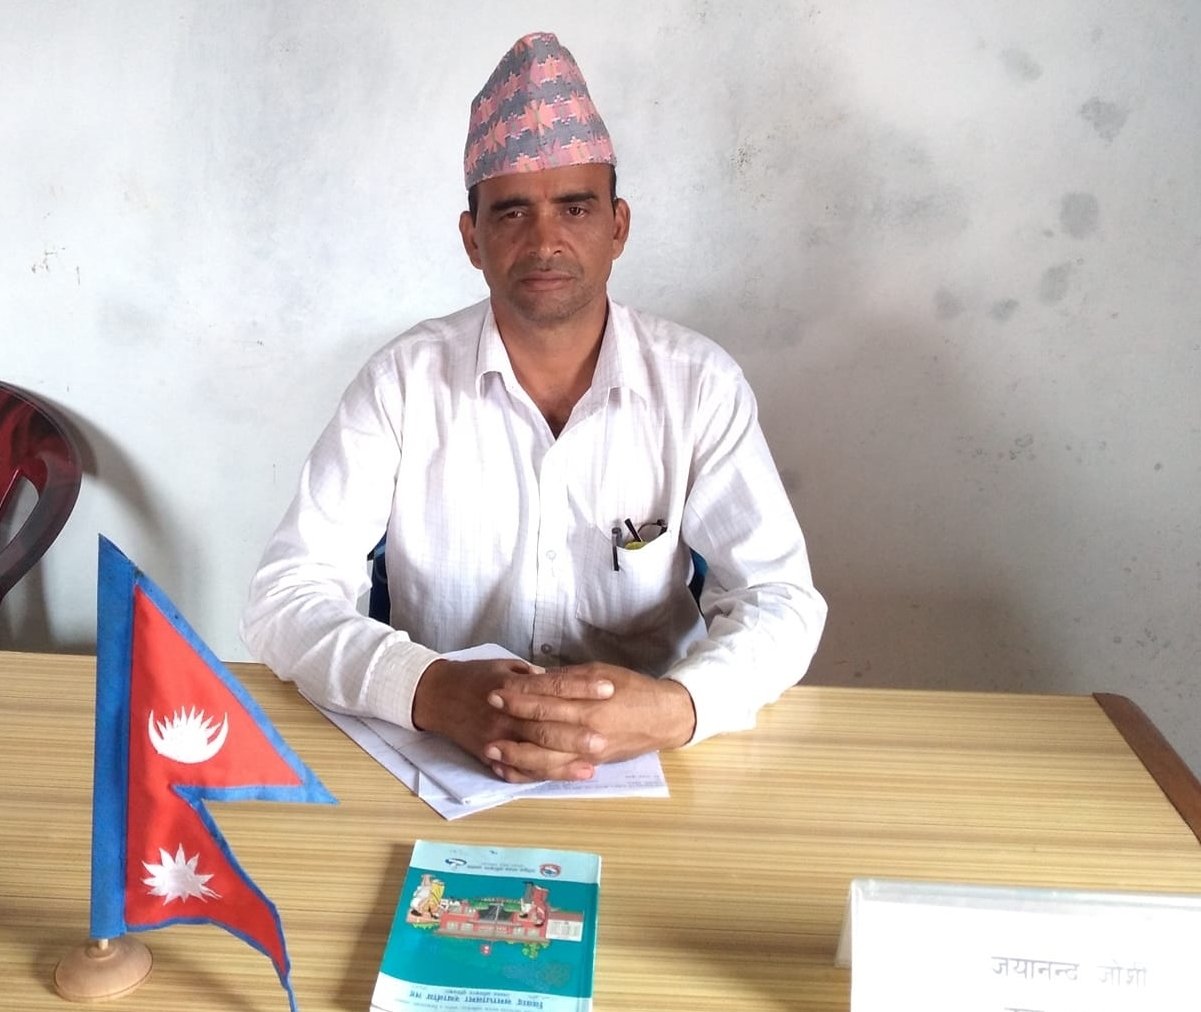 नेपाली काँग्रेस दार्चुलाको सह–सचिवमा जोशीको उम्मेदवारी घोषणा